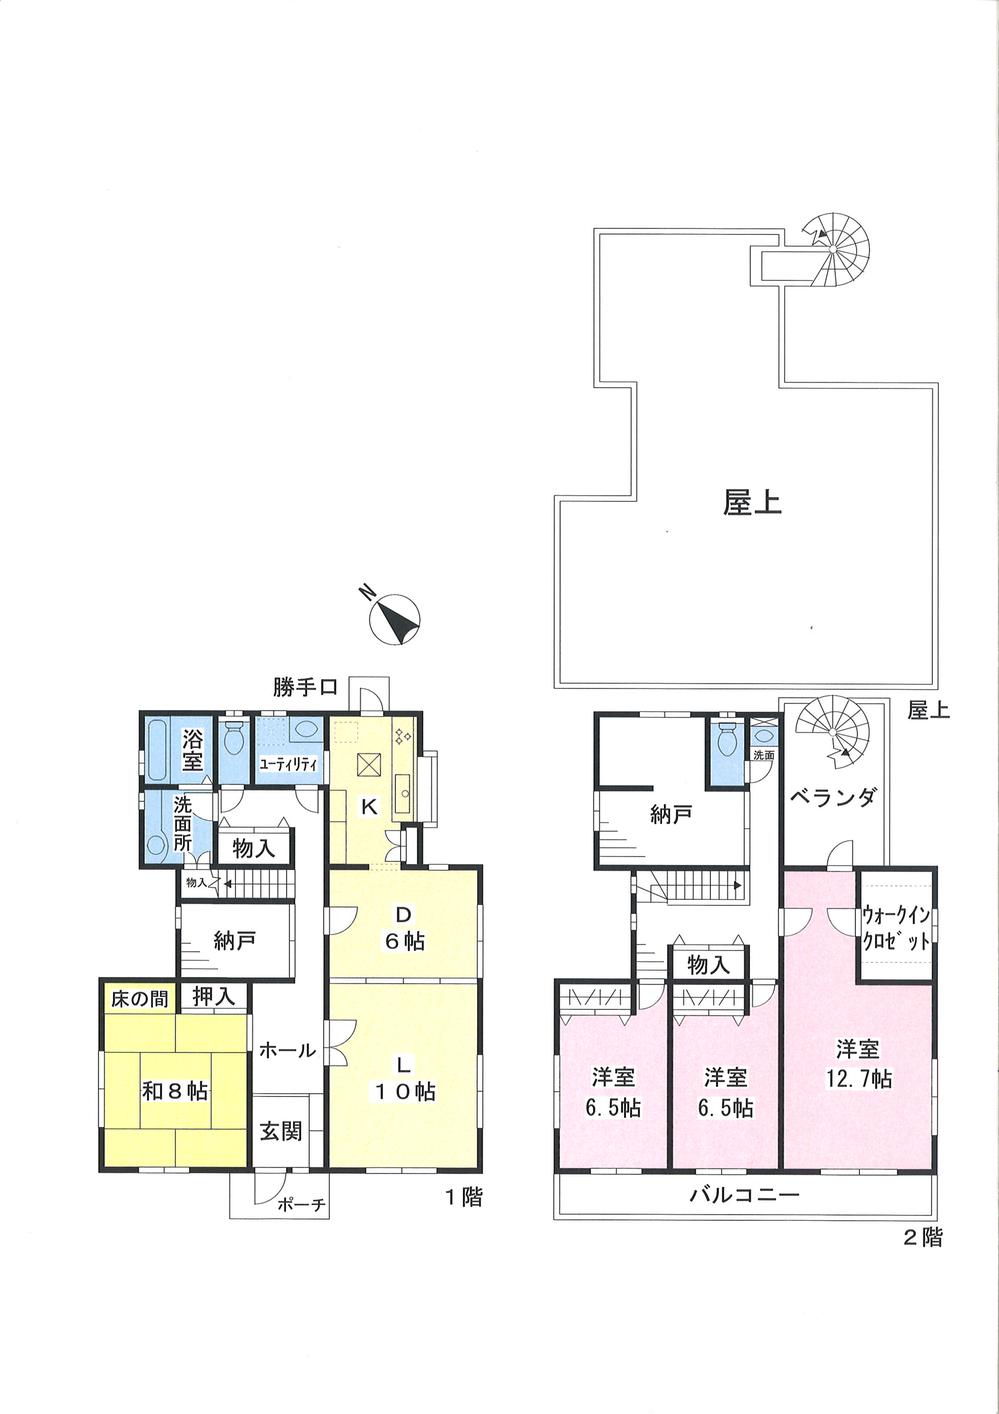 Floor plan. 39,800,000 yen, 4LDK + 2S (storeroom), Land area 201.66 sq m , Building area 163.96 sq m